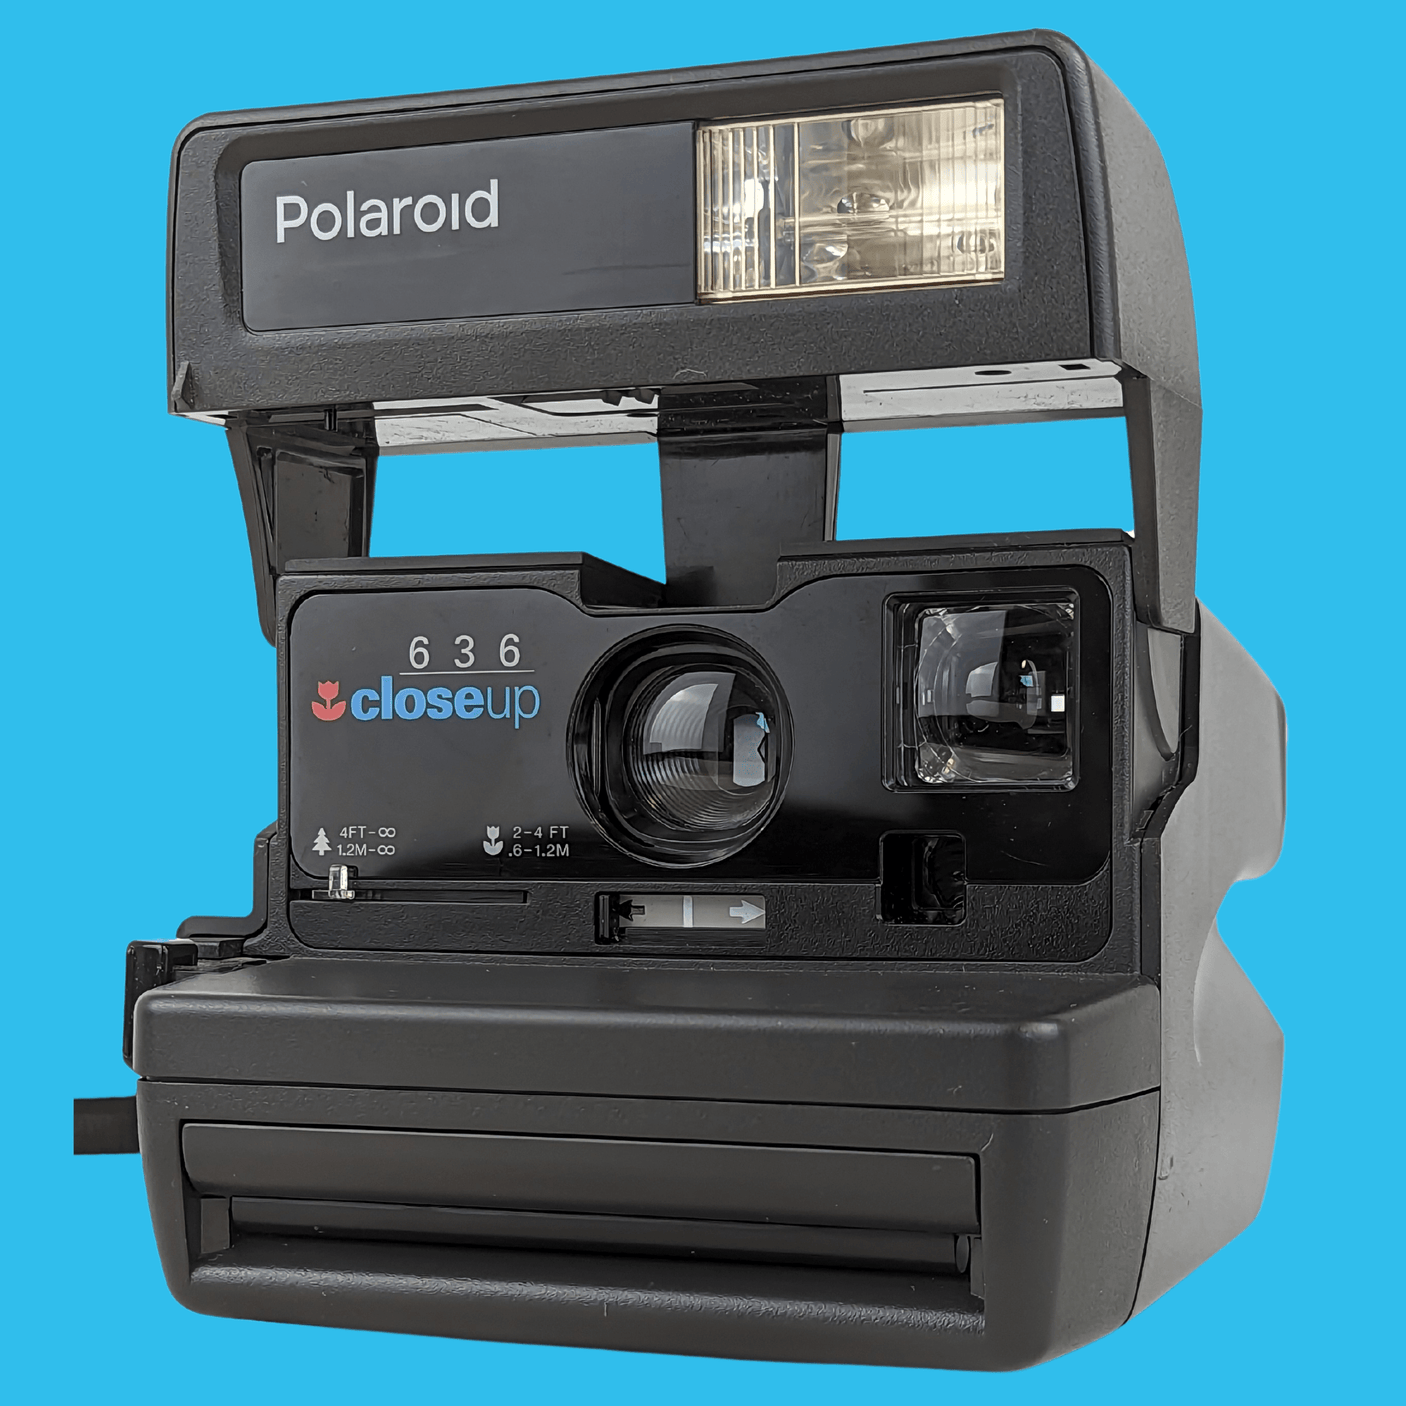 Polaroid 636 Close Up Instant Film Camera